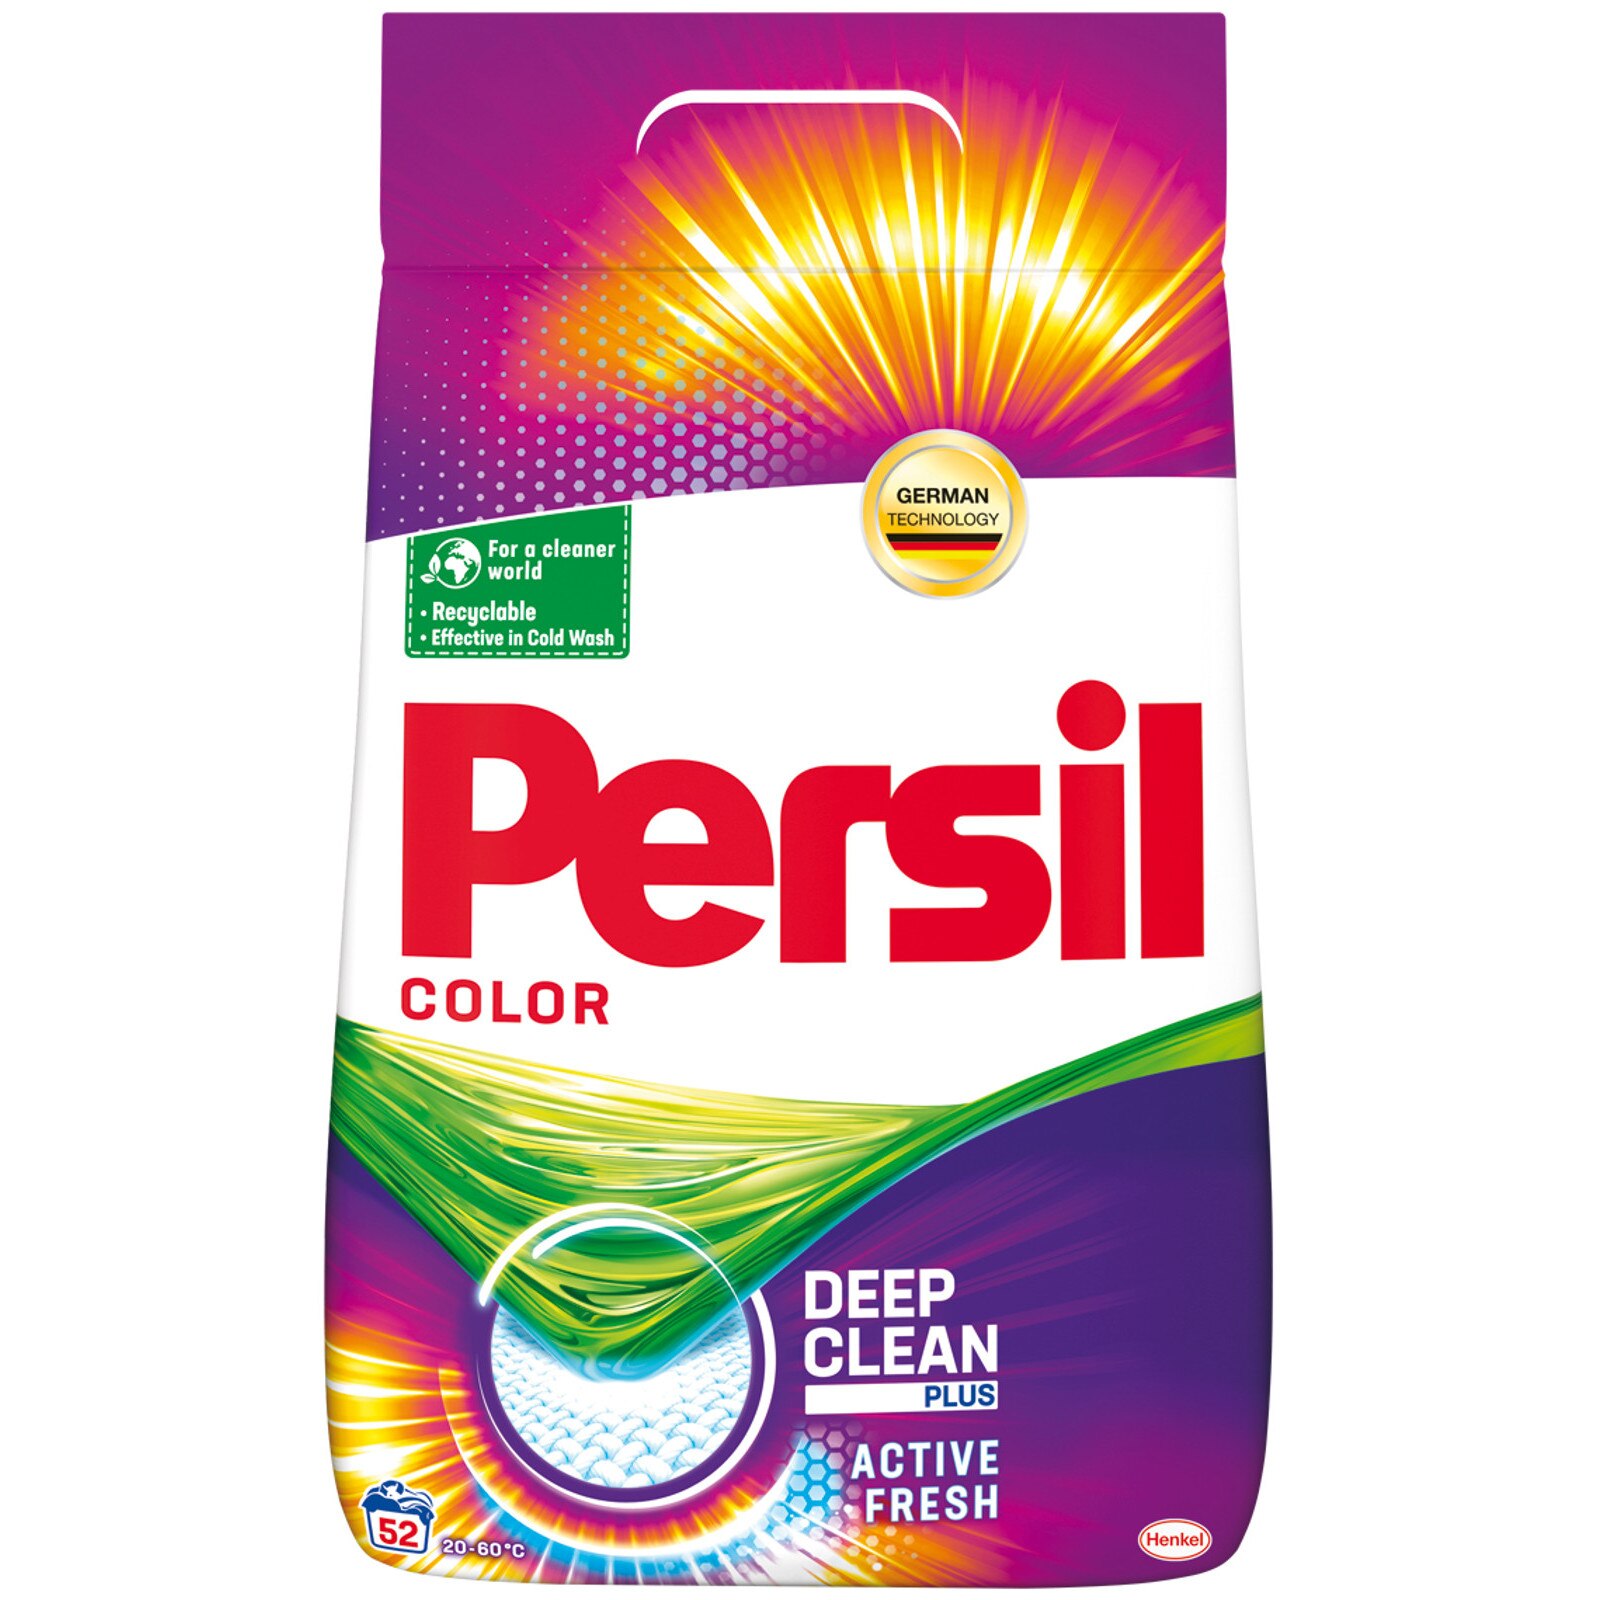 Detergent Pulbere Ariel Color 52 Spalari 3 38kg Emag Ro